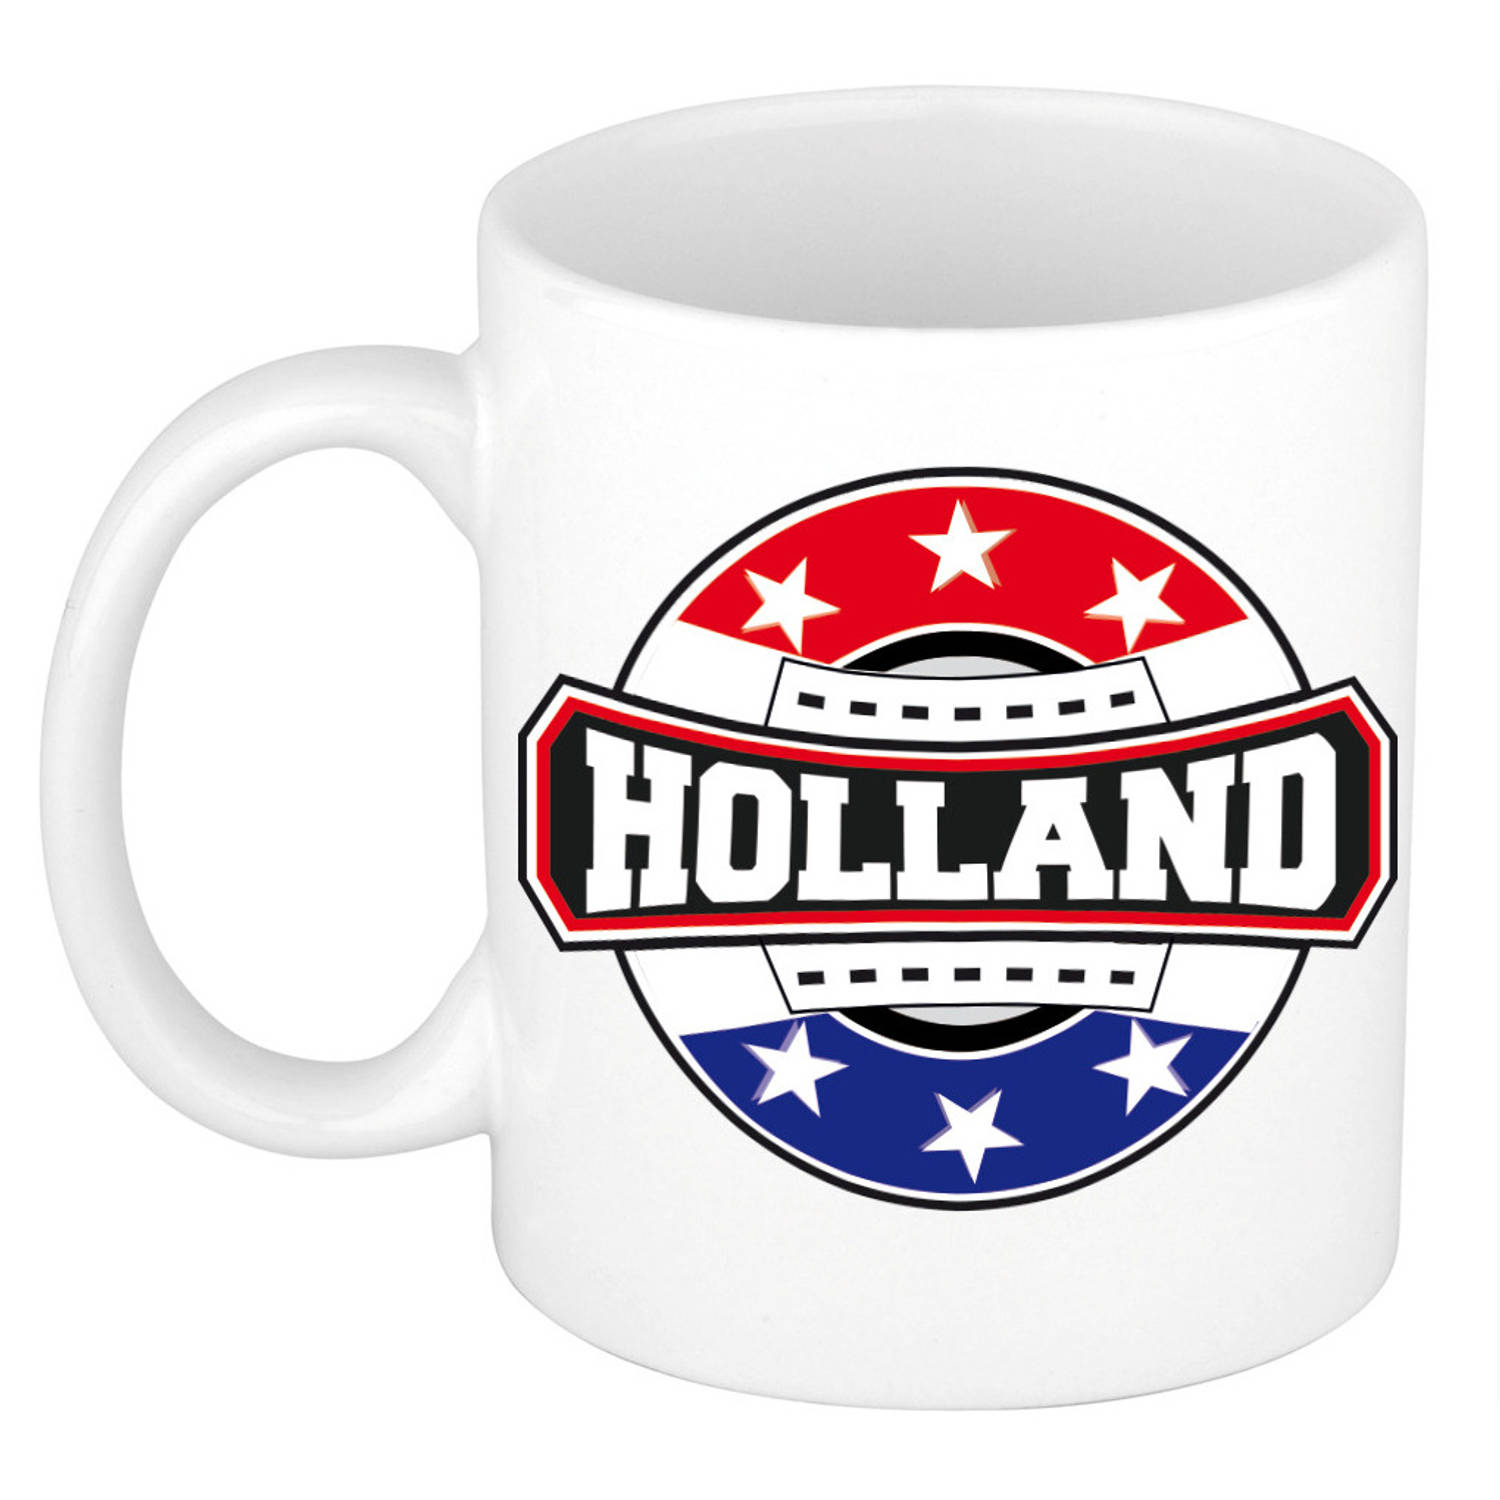 Holland / Nederland logo supporters mok / beker 300 ml - feest mokken